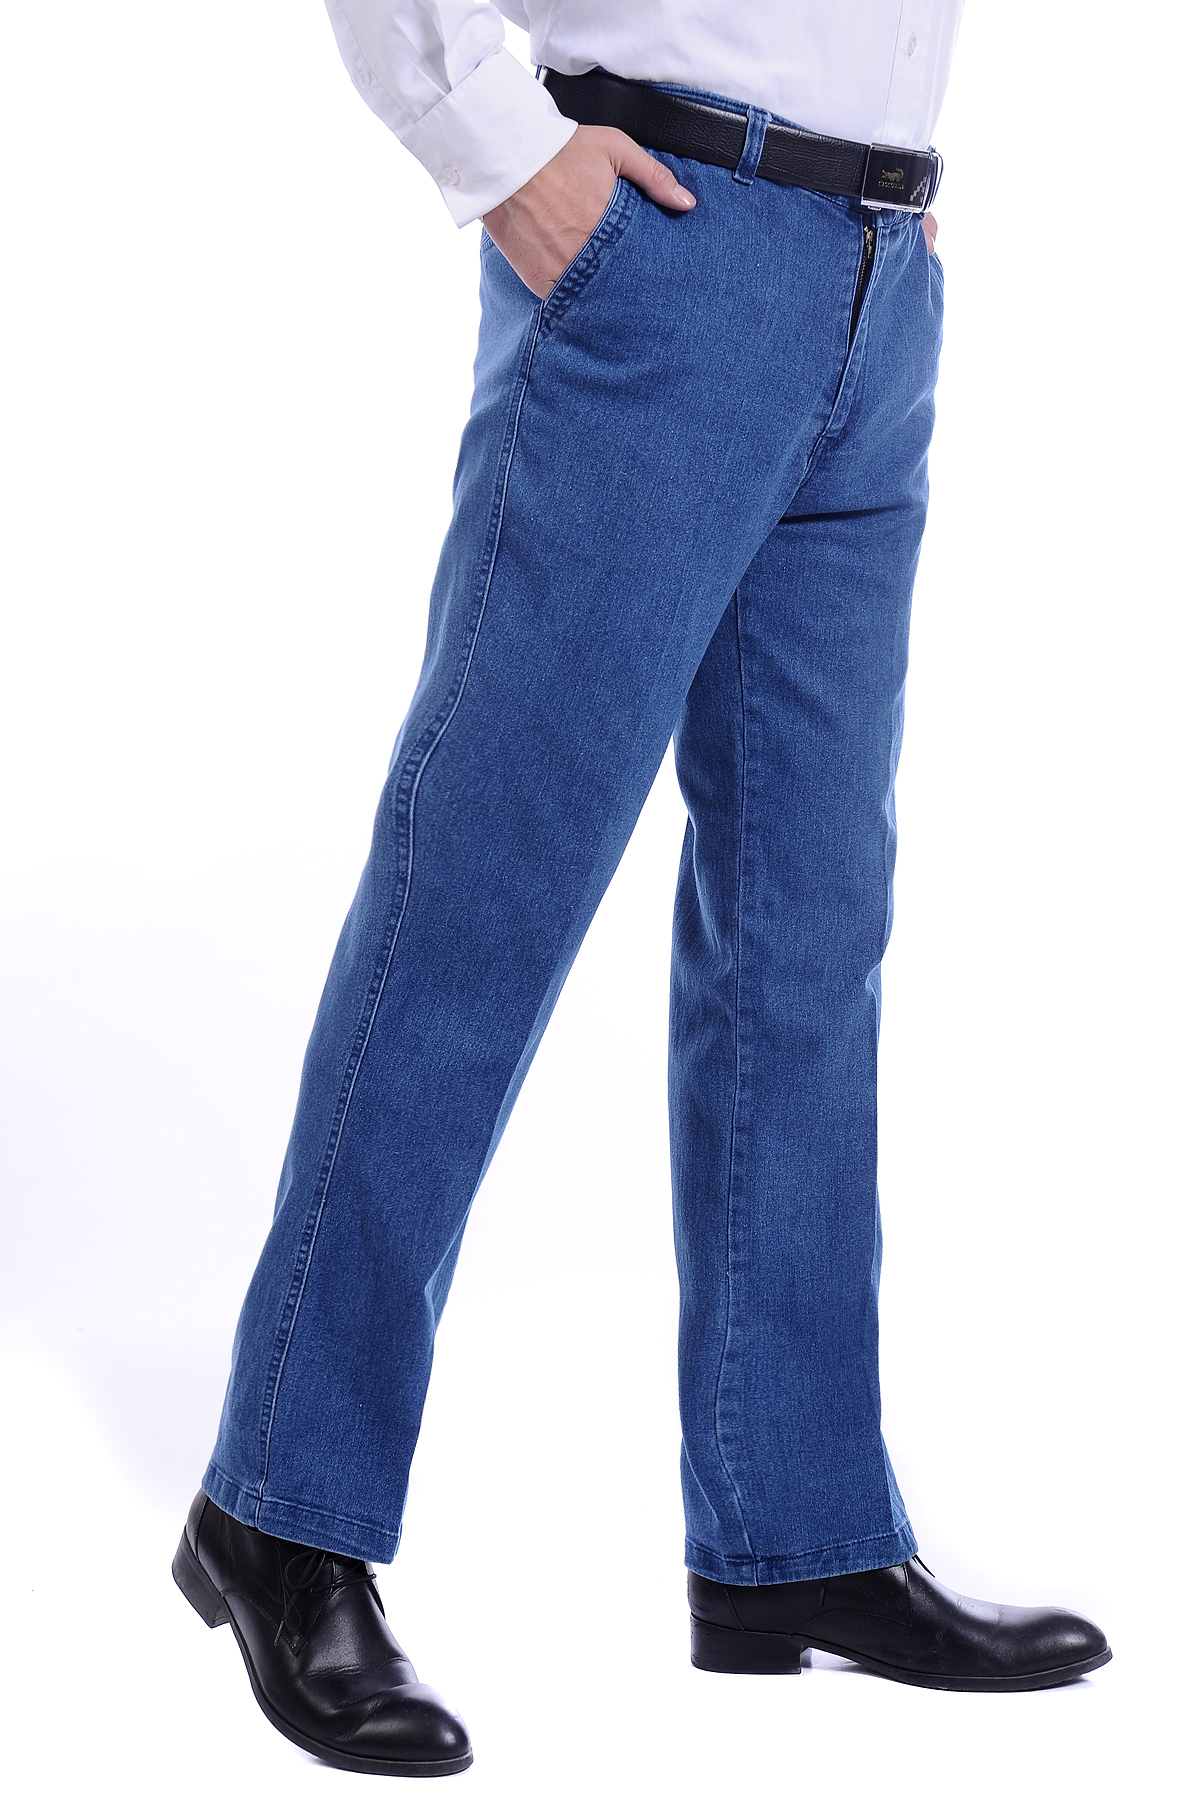 Jeans pour personne âgée droite en vrac en coton pour automne - Ref 1469025 Image 52